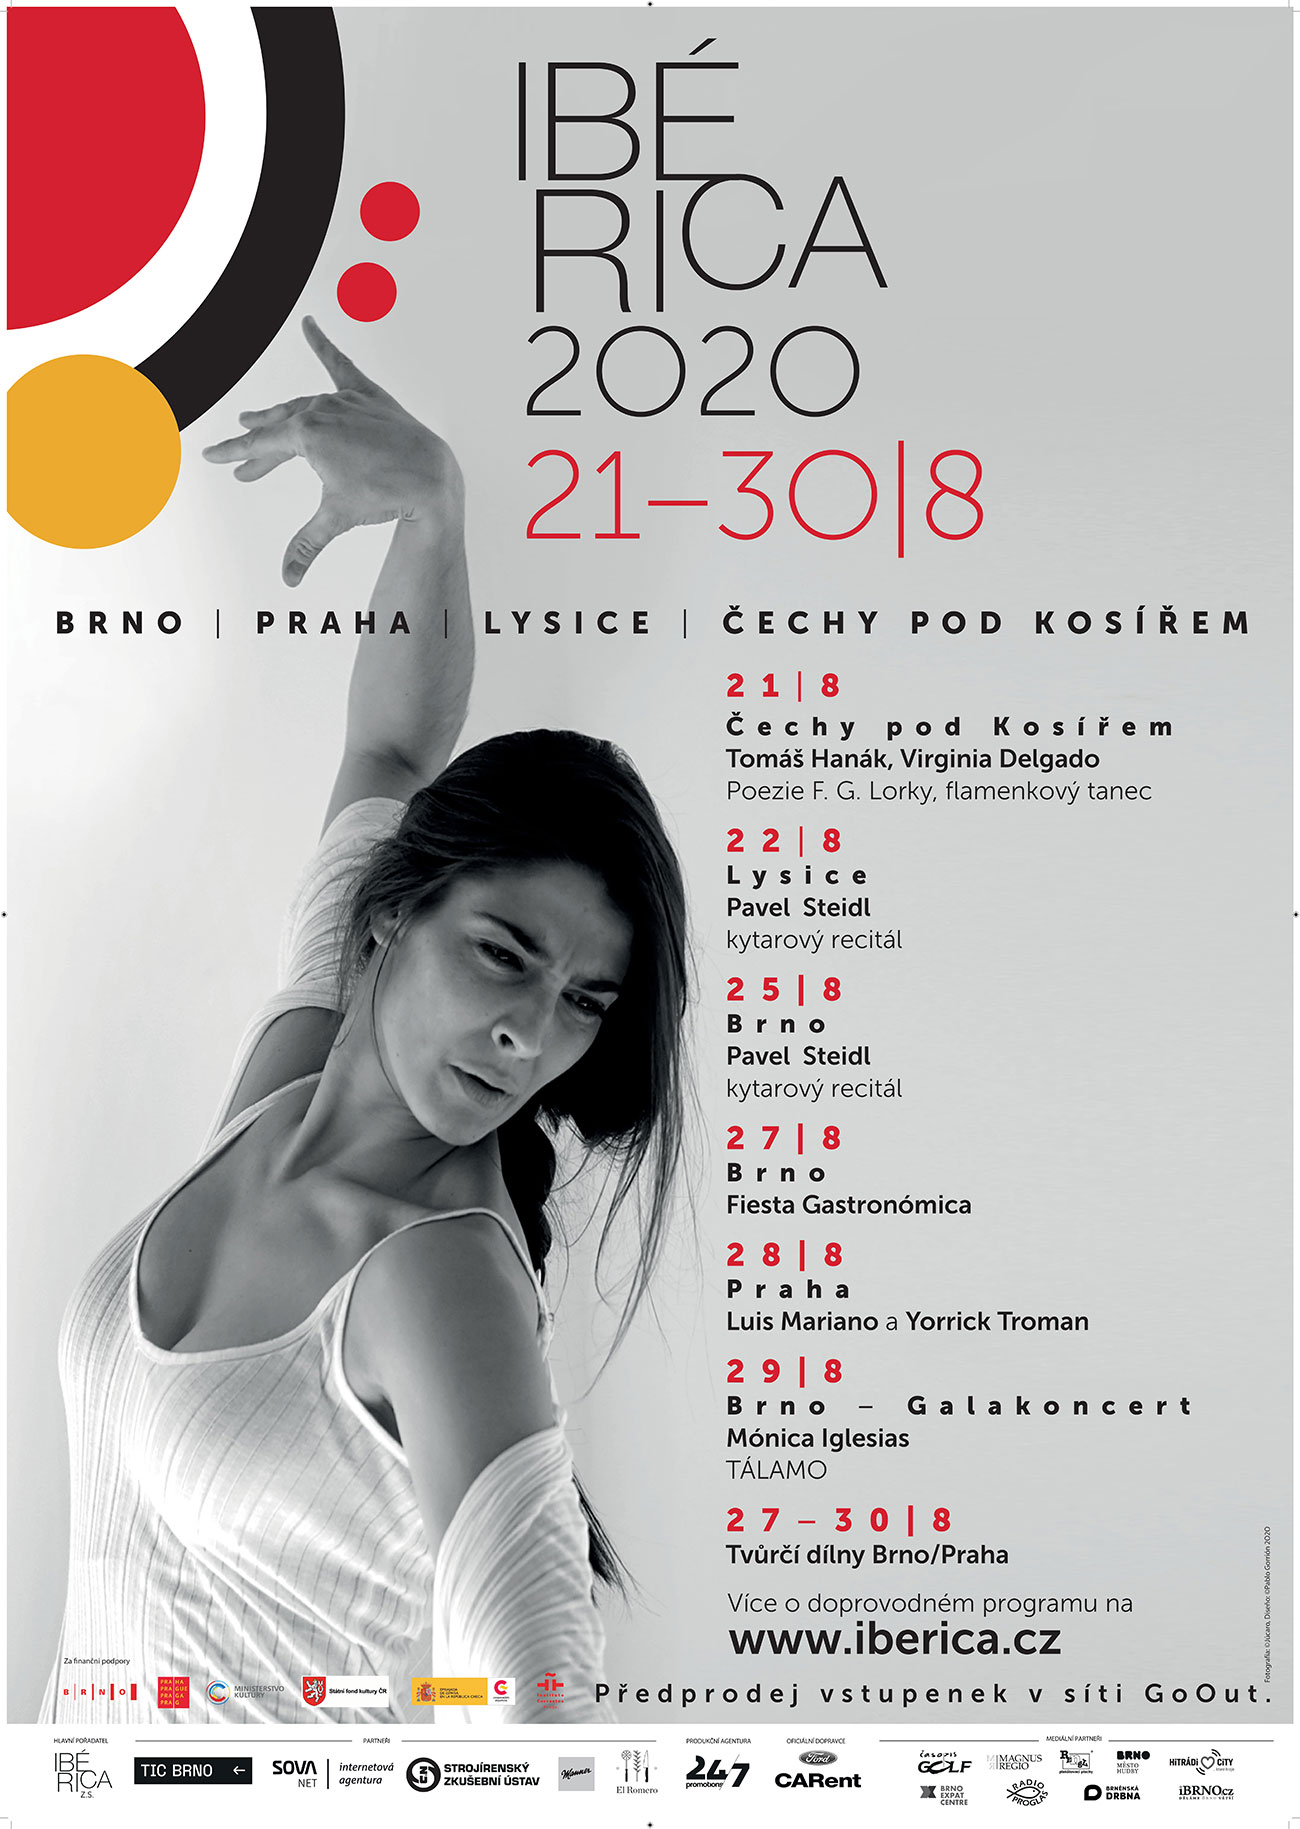 Ibérica 2020 - Chequia